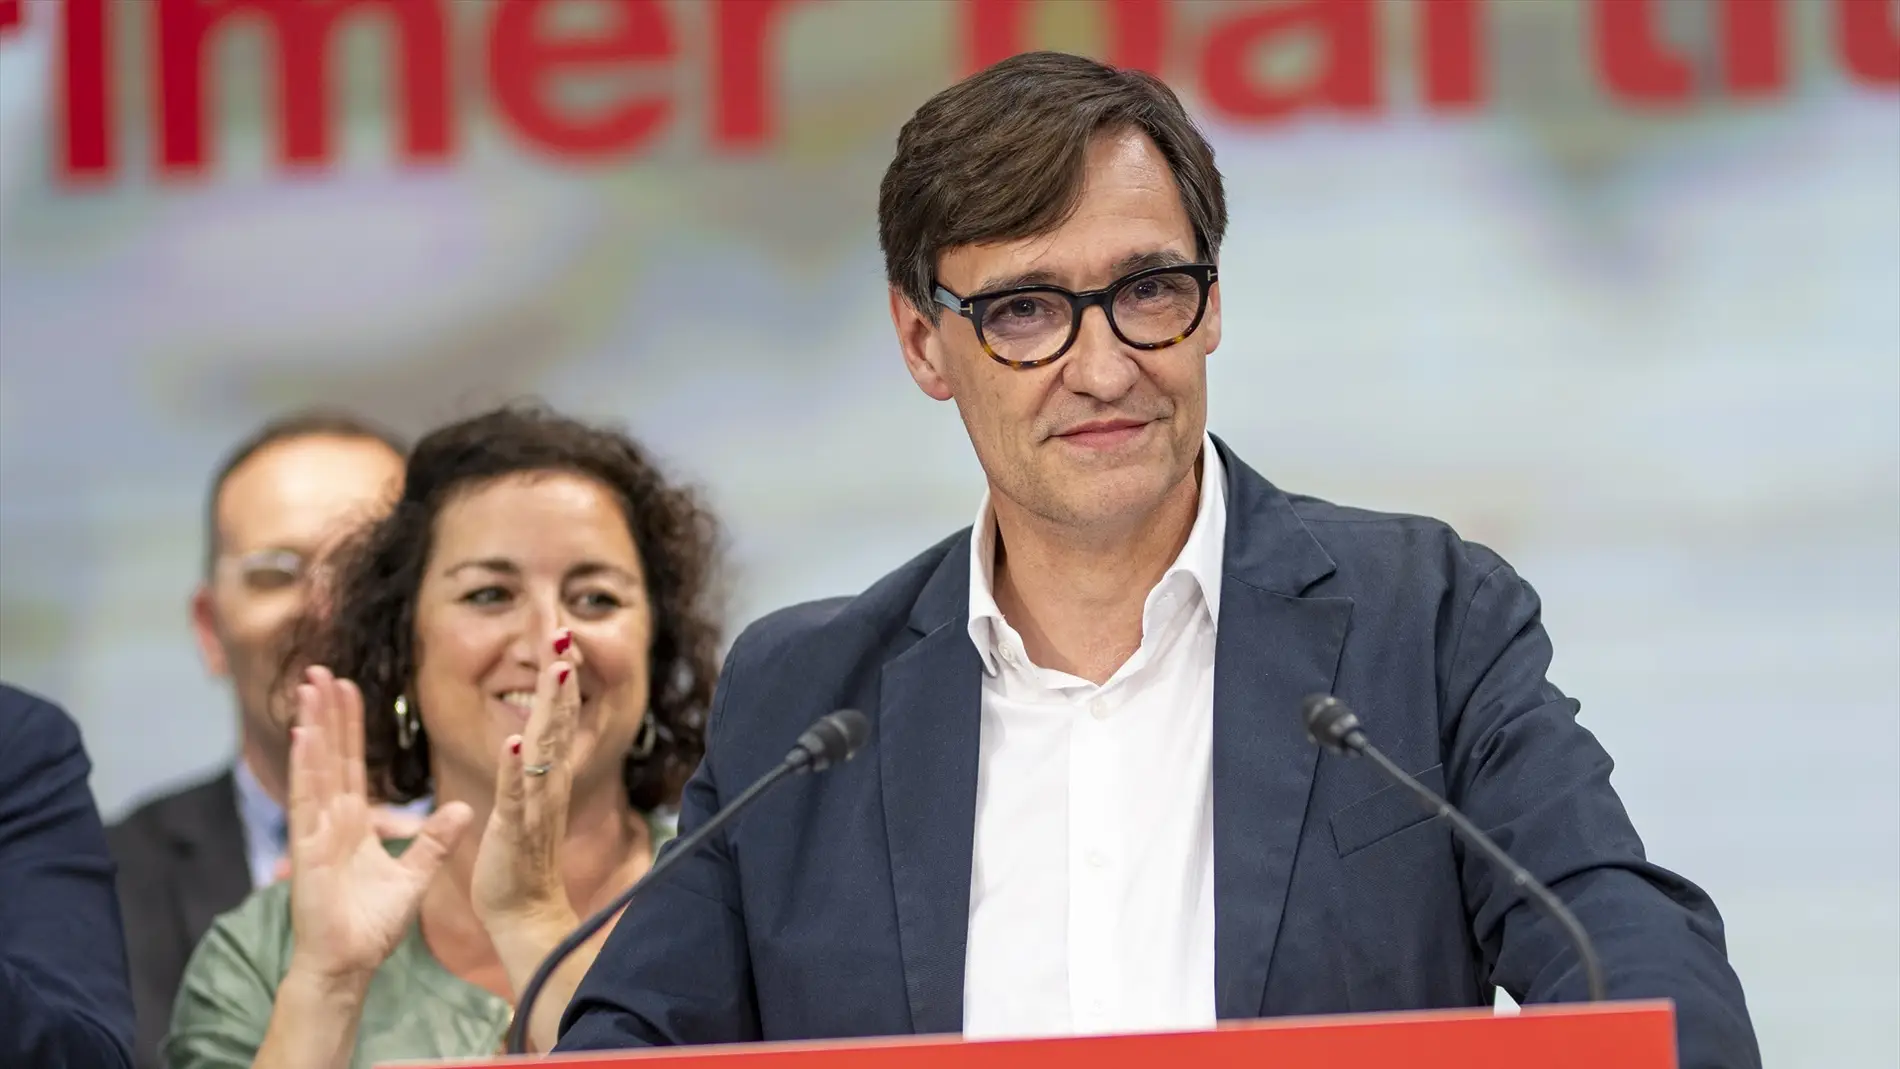 Illa cree que sería un "error" apoyar una investidura de Puigdemont: "Iría en contra de la voluntad de los ciudadanos"